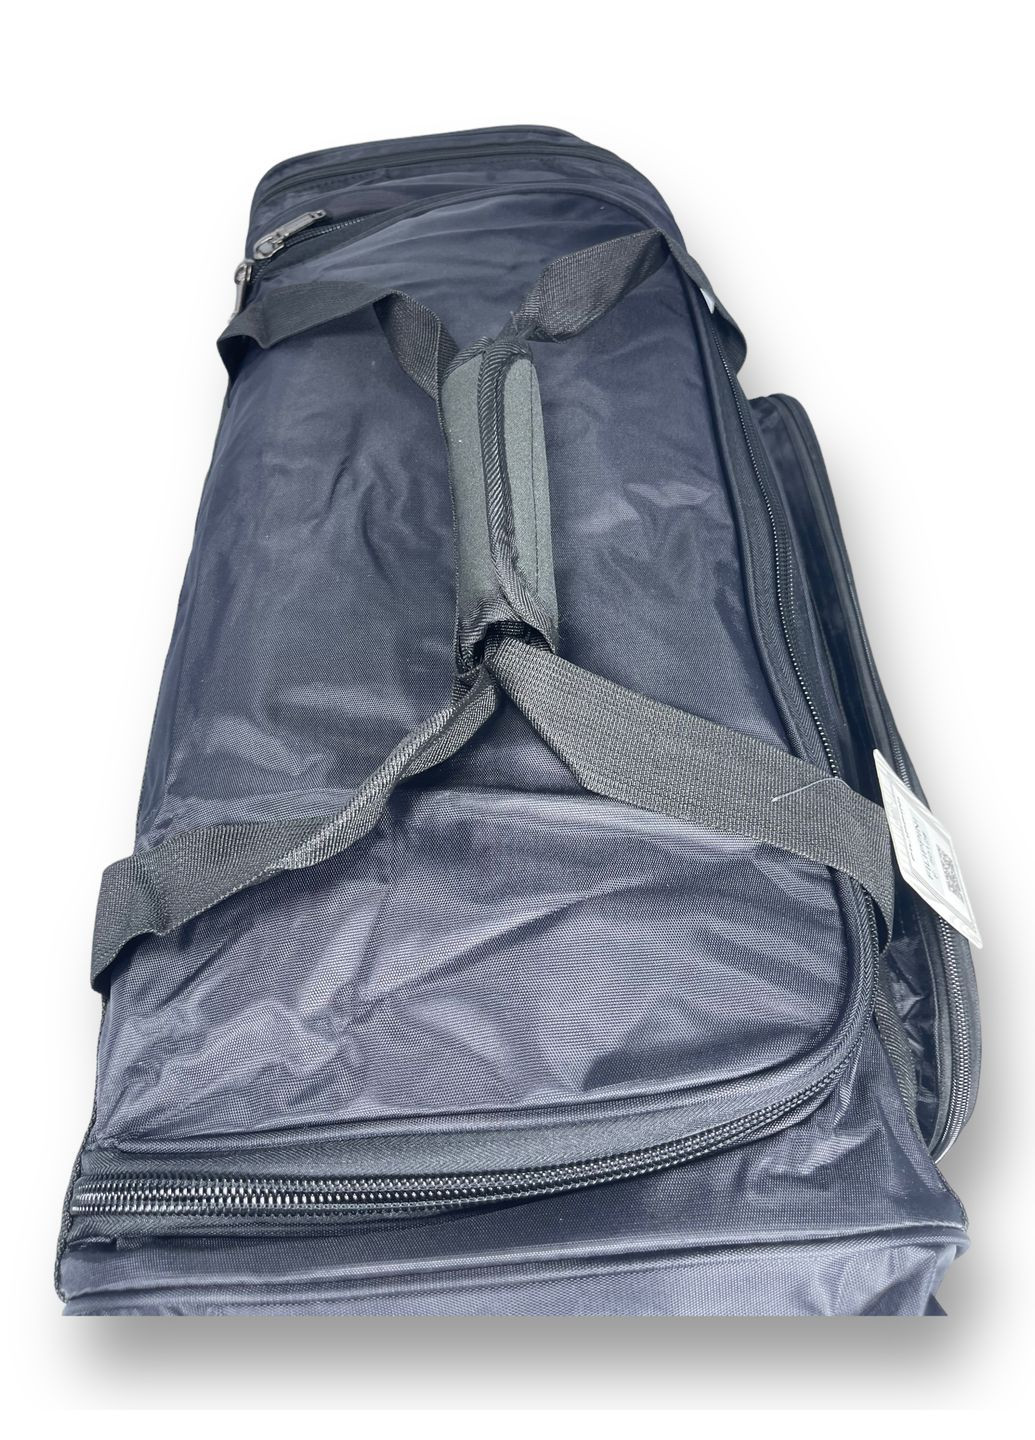 Дорожная сумка, 70 л, 1 отделение, 4 дополнительных кармана, размер: 65*35*30 см, черный Filippini (285814962)